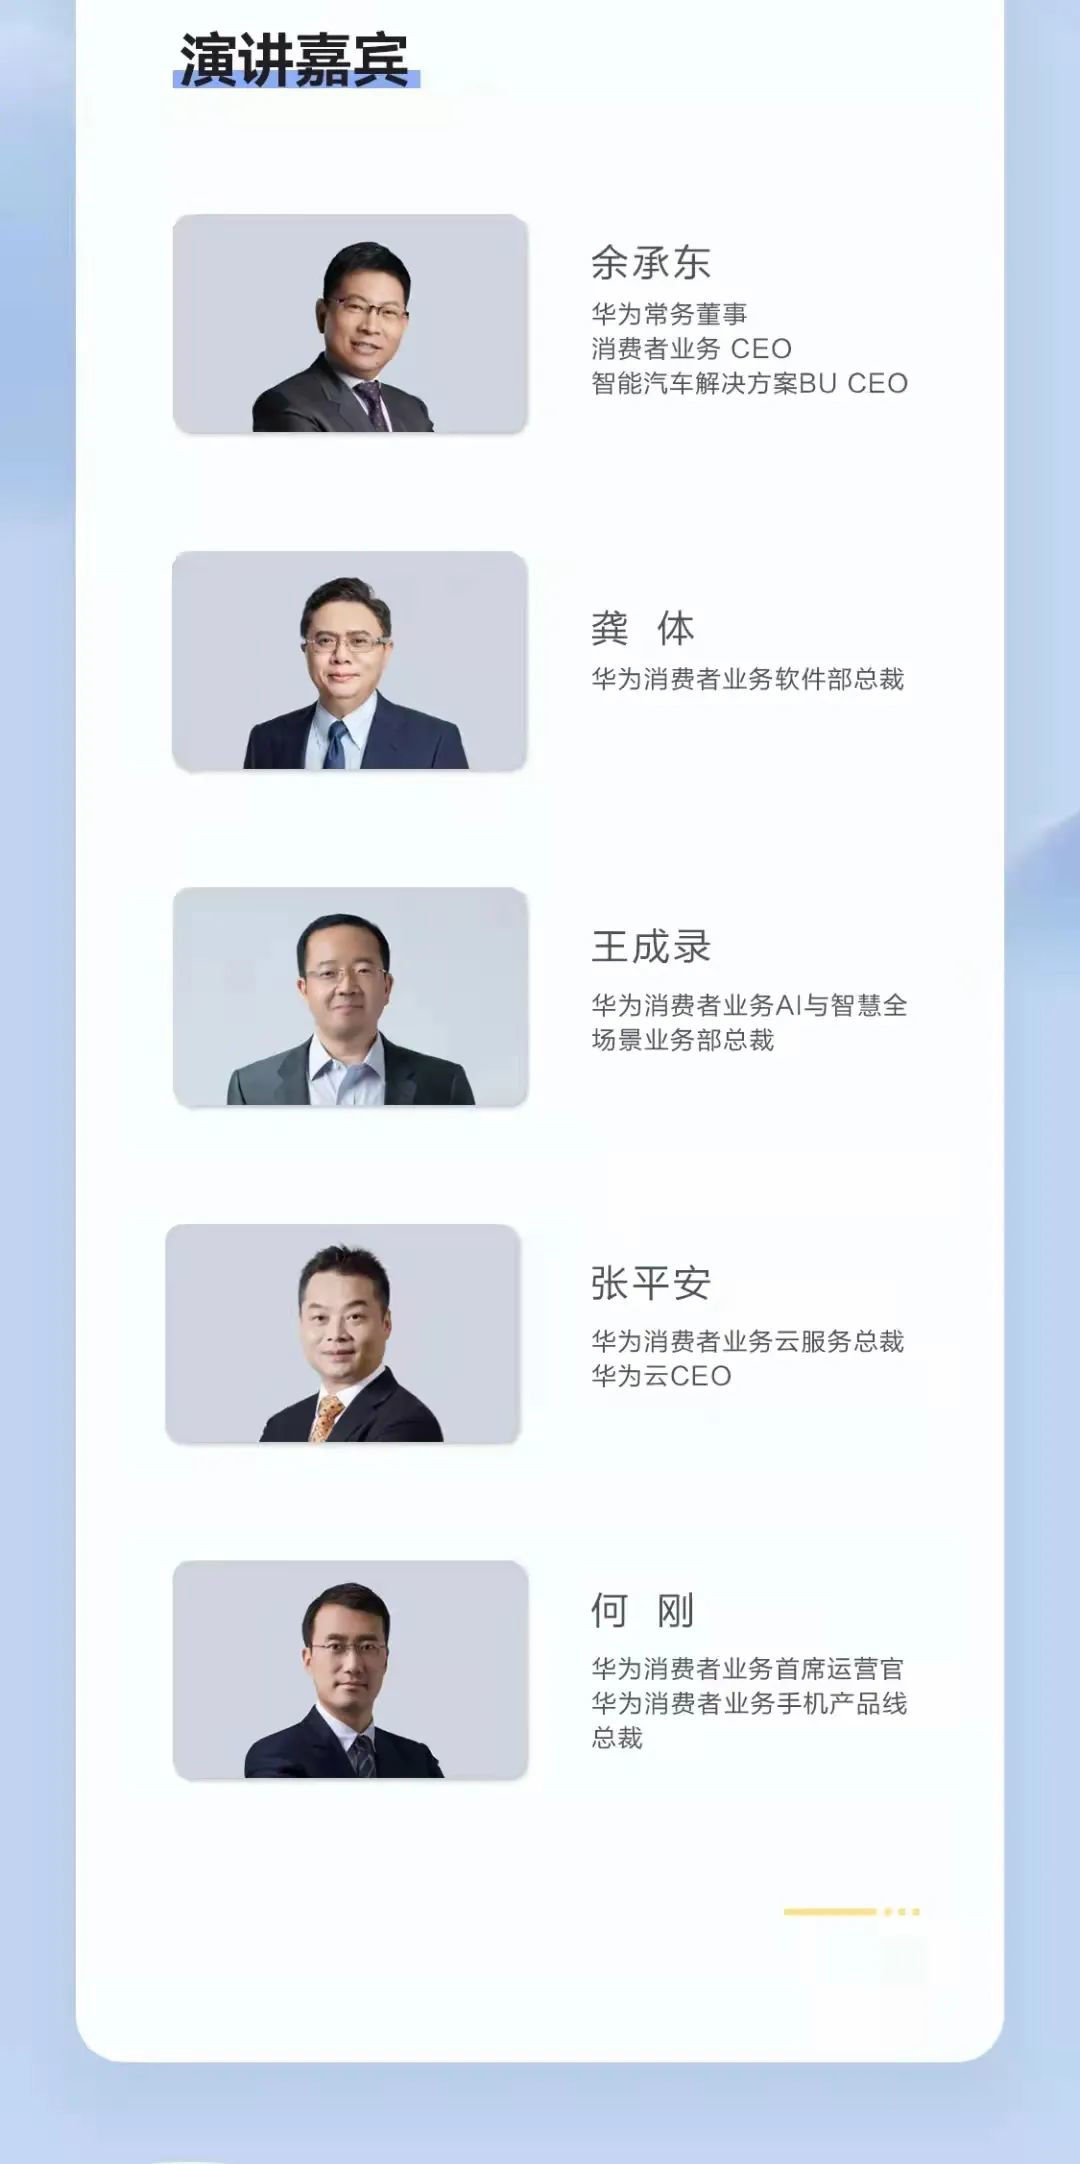 演讲|华为开发者大会HDC 2021主题演讲内容公布